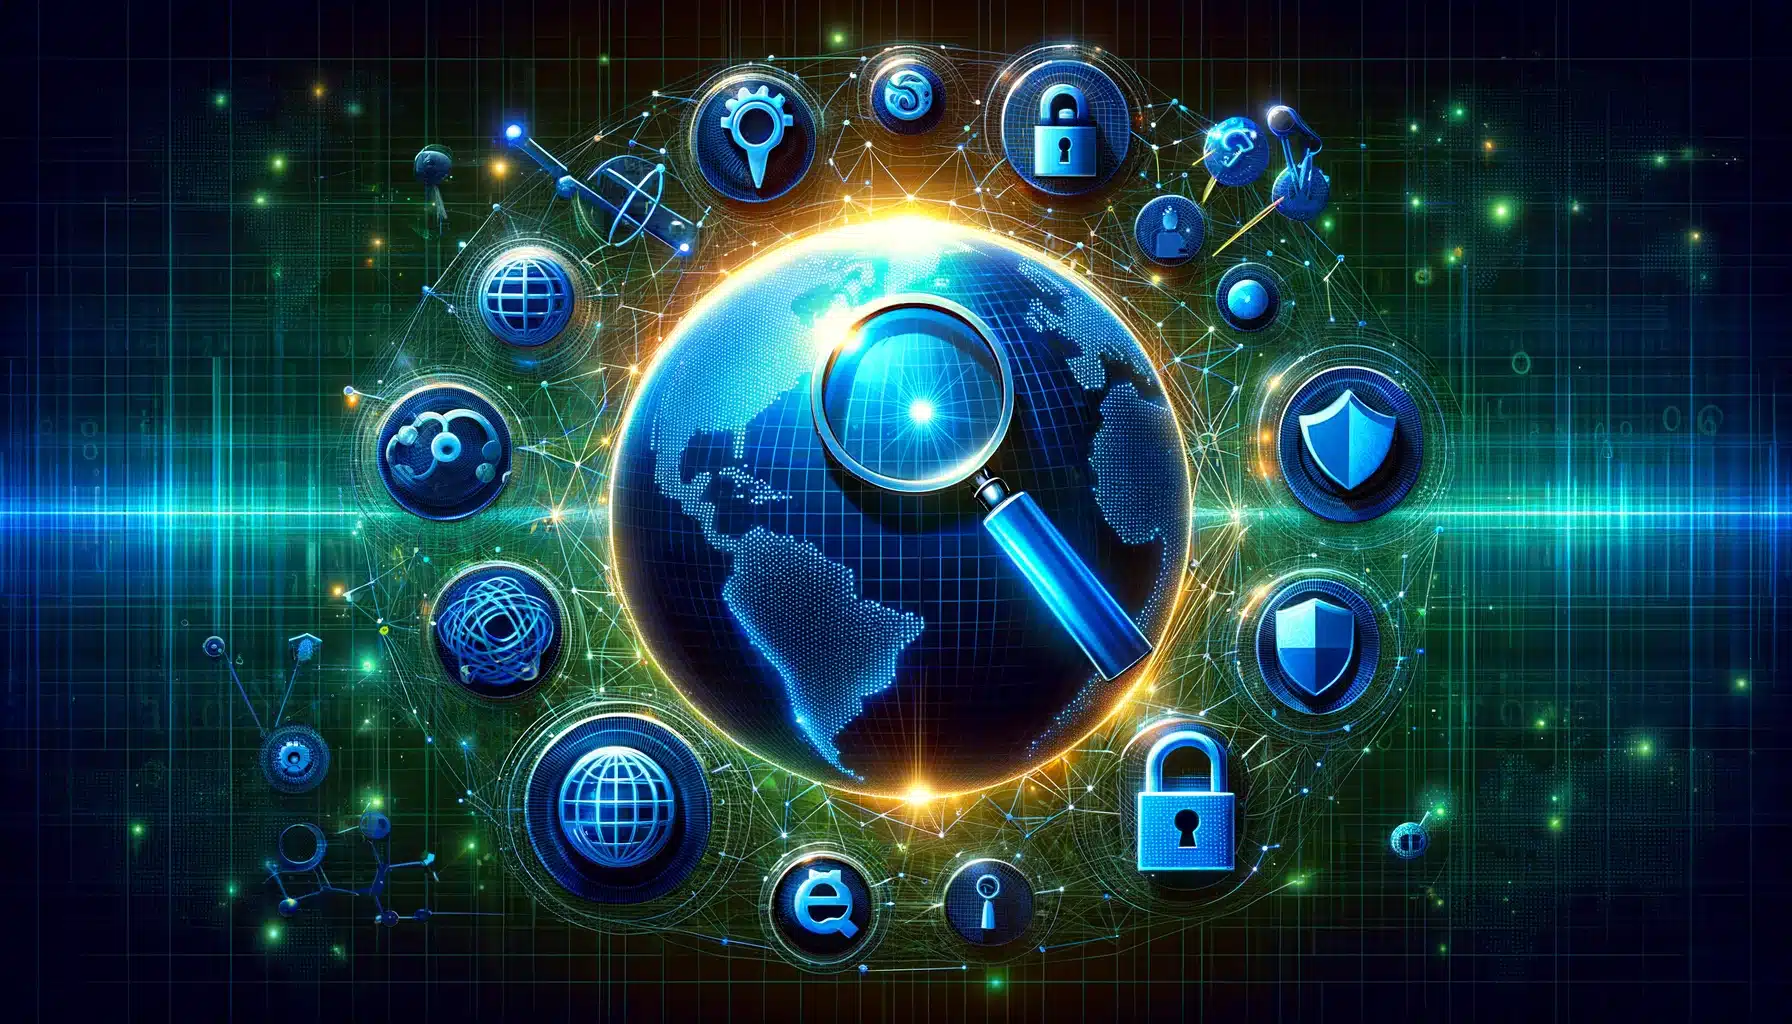 Ilustracja wykonana na zlecenie ROAN24, przedstawiająca koncepcję Raportu Przejrzystości Google z świecącym globem w centrum, otoczonym przez symbolizujące przeszukiwanie i transparentność lupę, prywatność i bezpieczeństwo kłódkę, kwestie prawne i regulacje młotek sędziowski oraz ochronę przed zagrożeniami online tarczę, na tle sieci połączonych węzłów cyfrowych, co symbolizuje globalny zasięg i złożoność internetu.